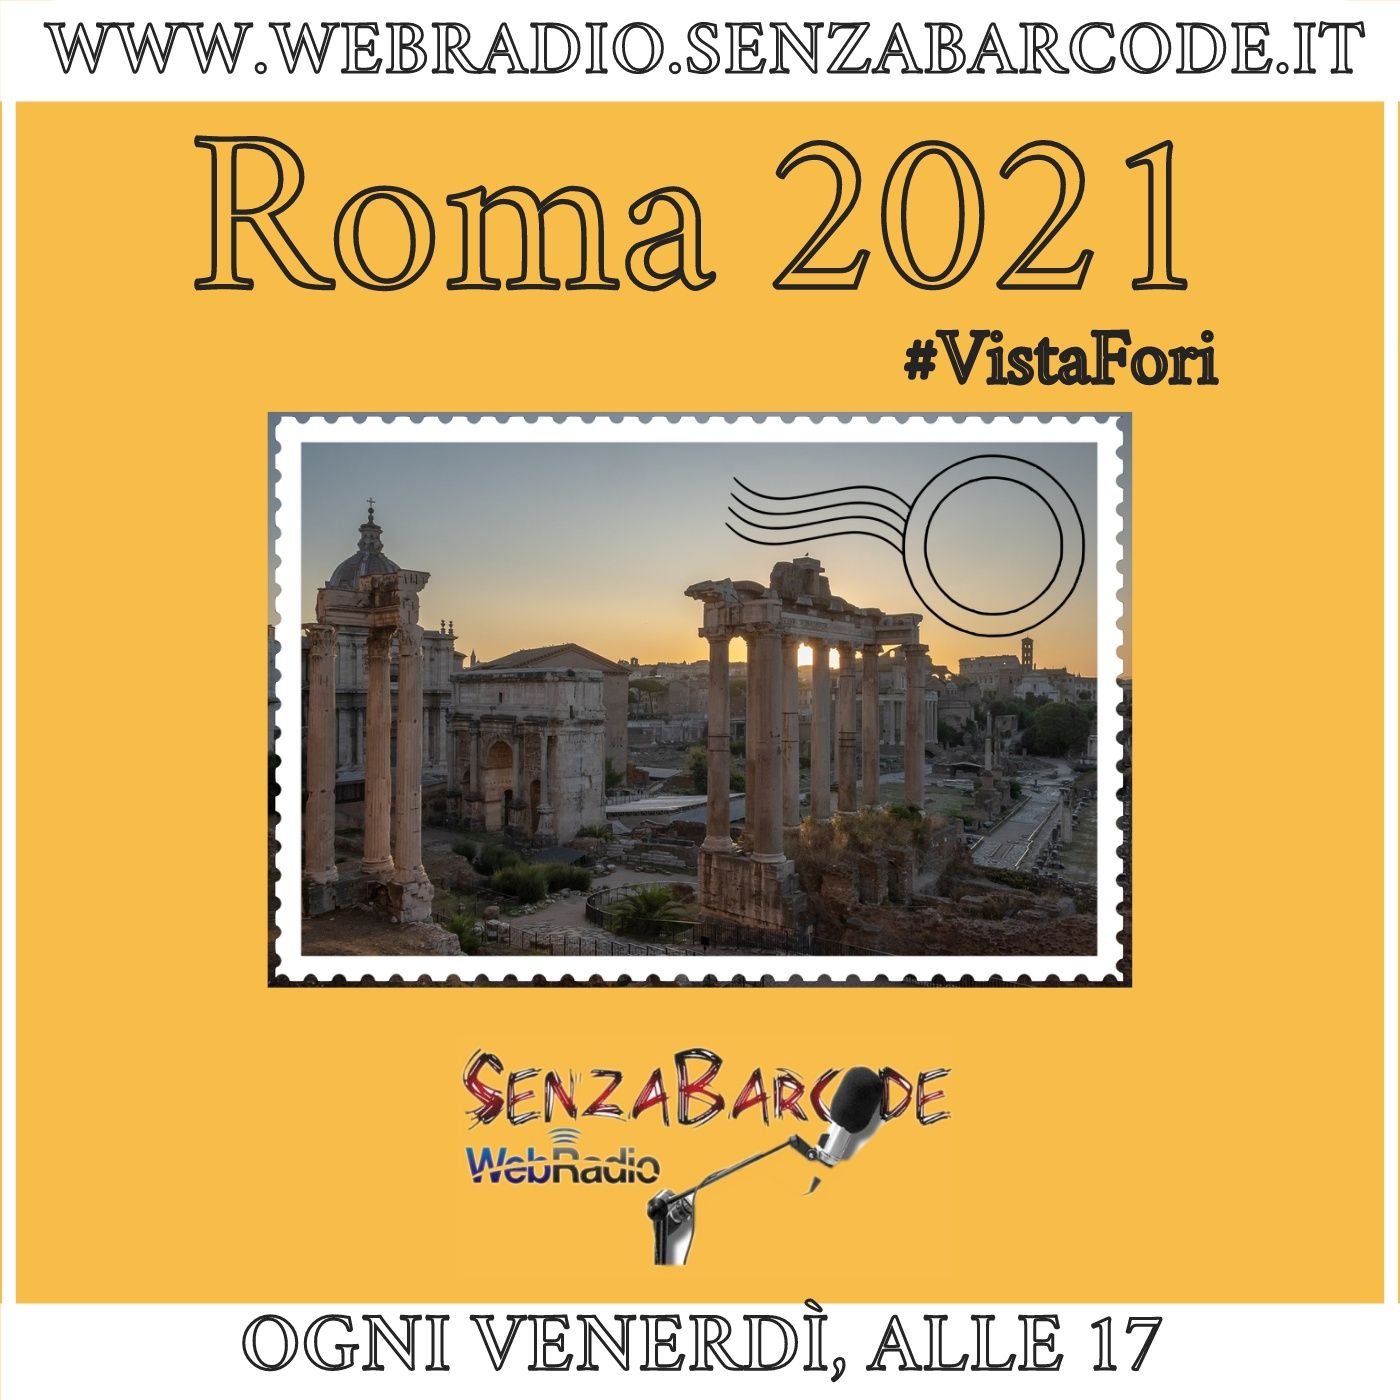 Roma 2021: Vista Fori